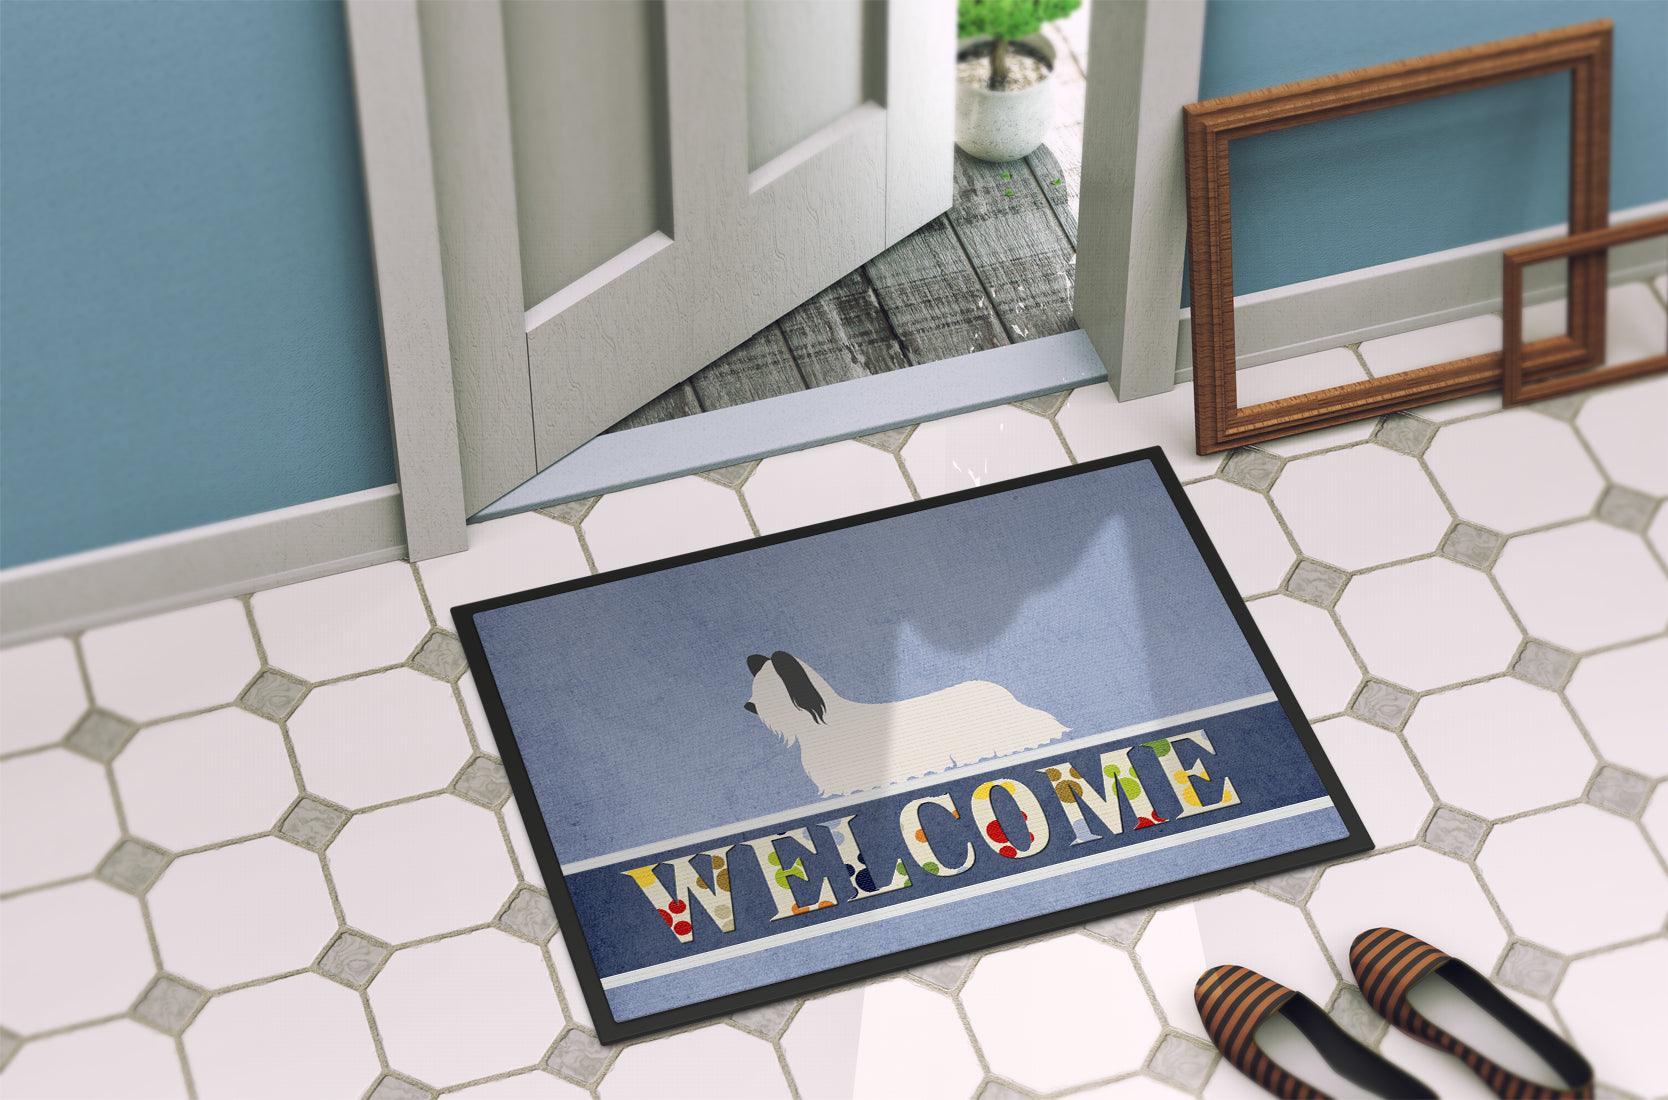 Skye Terrier Welcome Indoor or Outdoor Mat 18x27 BB8278MAT - the-store.com